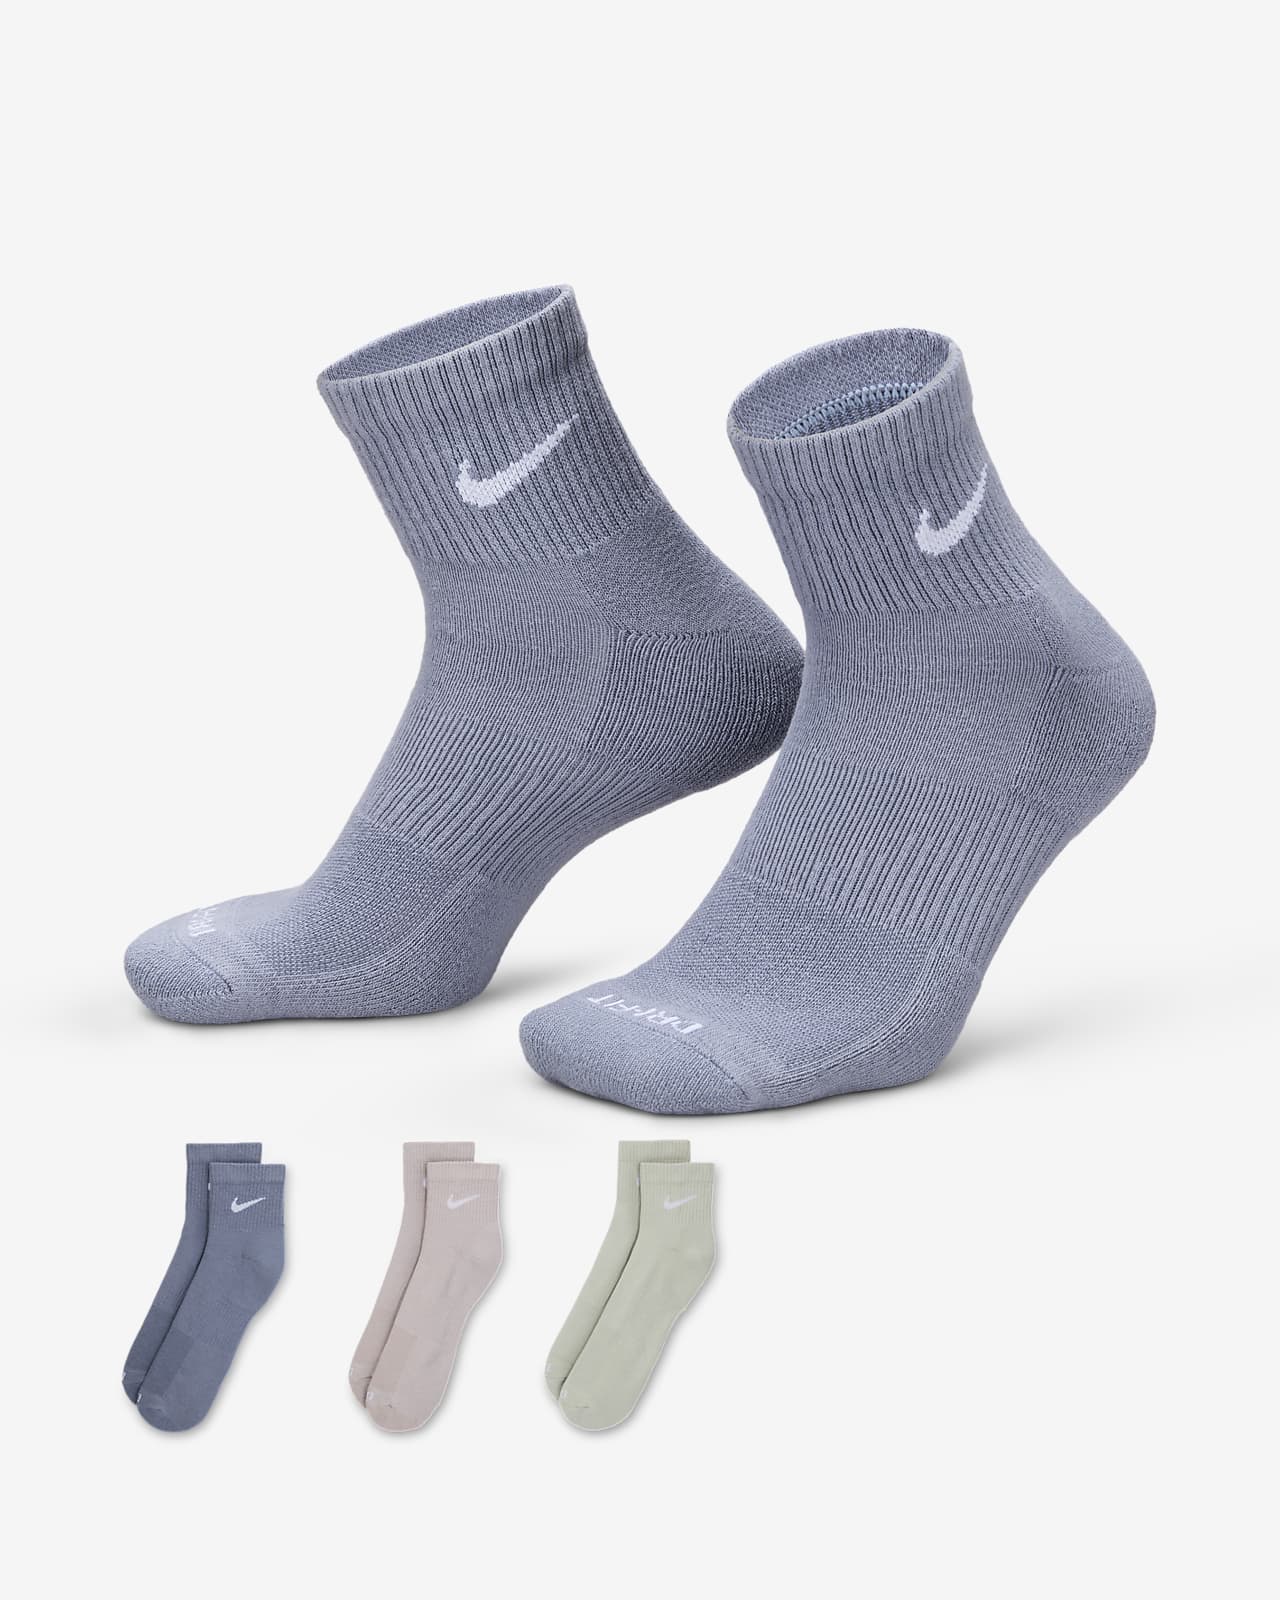 Nike Everyday Plus Cushioned Antrenman Bilek Çorapları (3 Çift)